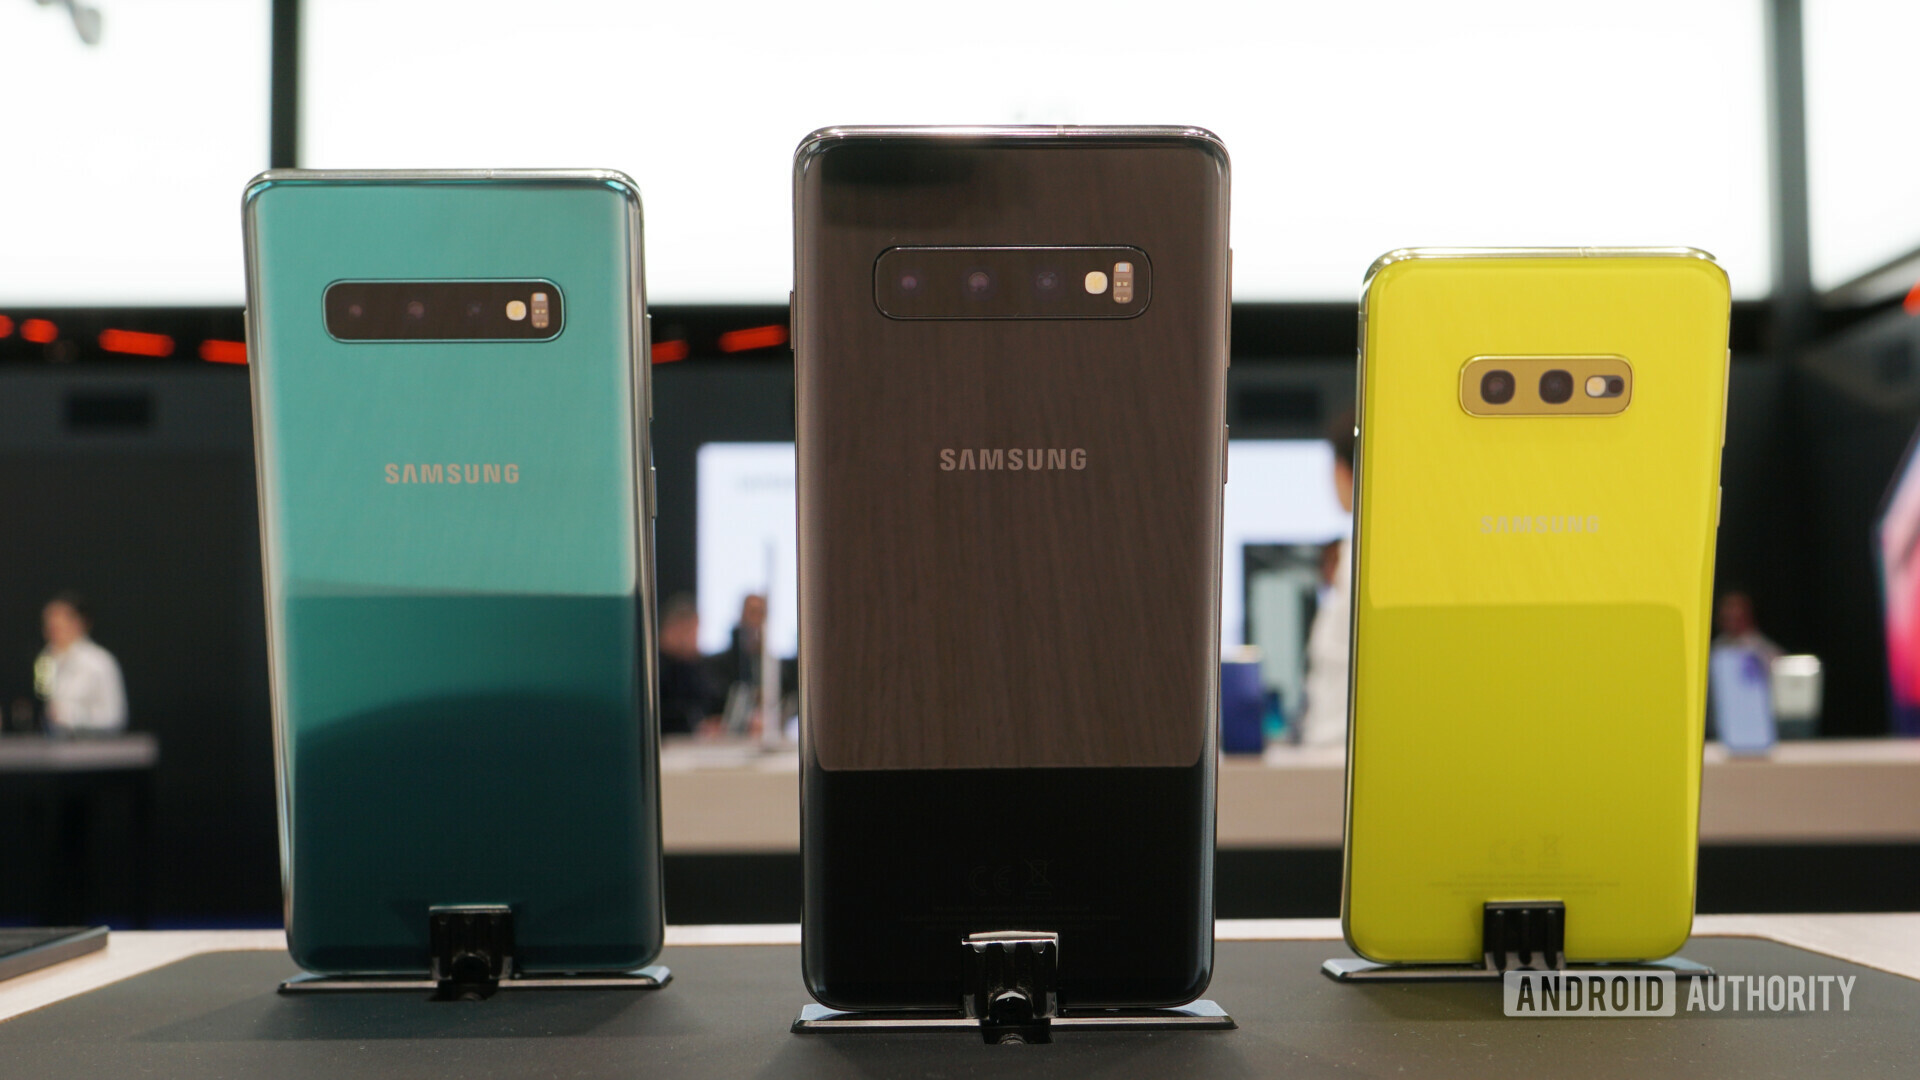 Samsung Galaxy S10, S10 Plus and S10e